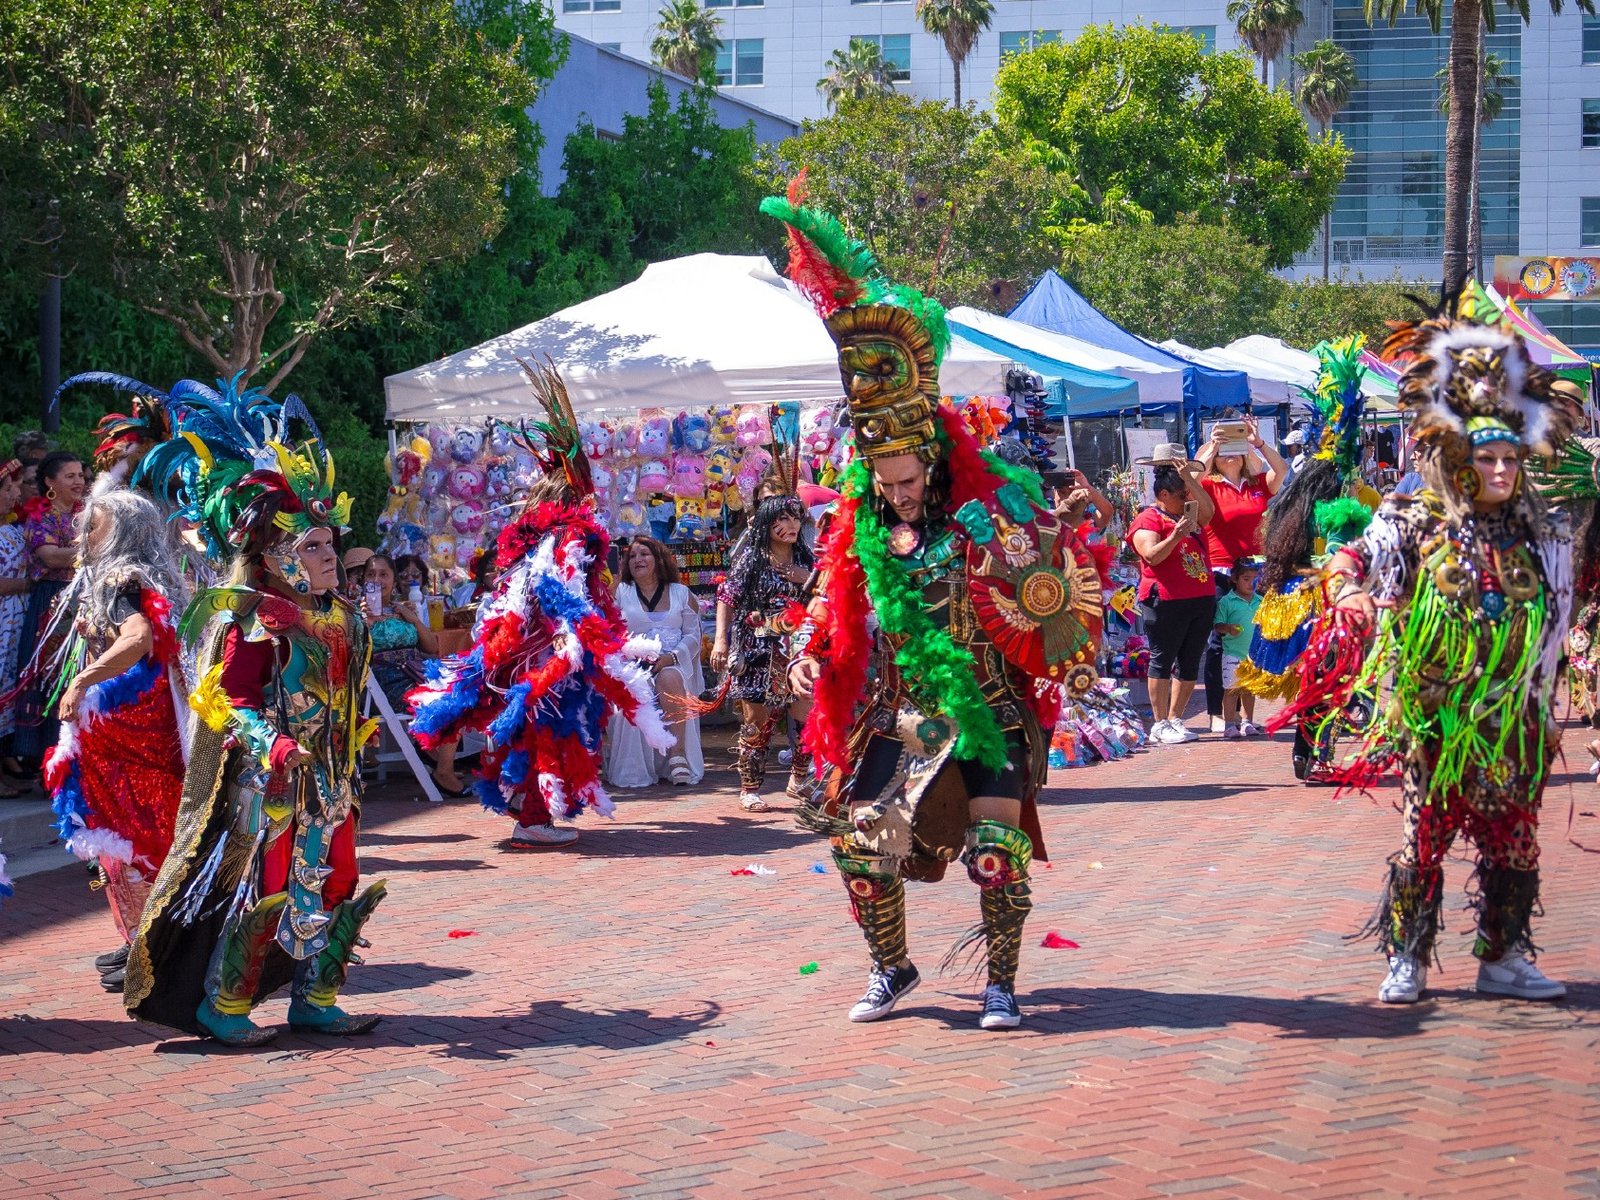 Tradiční tance zahrnují masky a propracované kostýmy